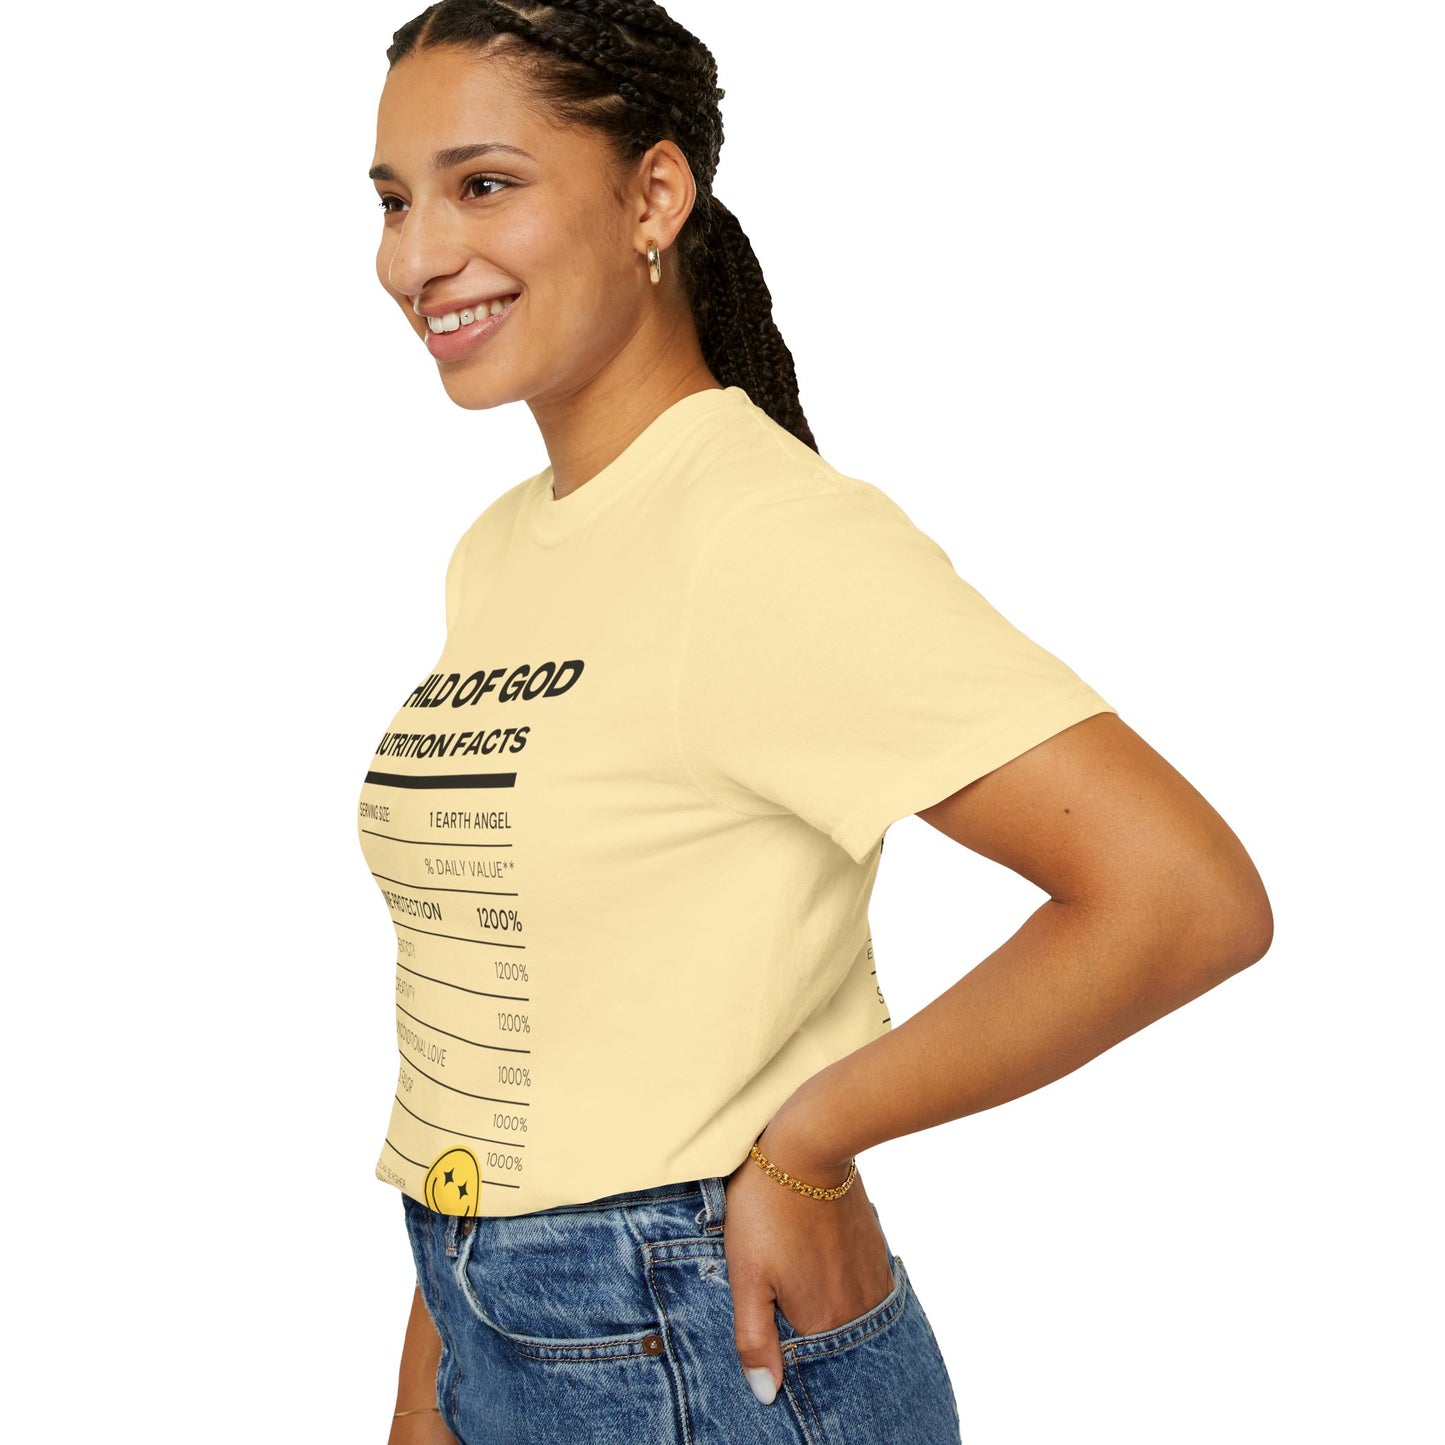 Unisex Child of God Garment-Dyed T-shirt